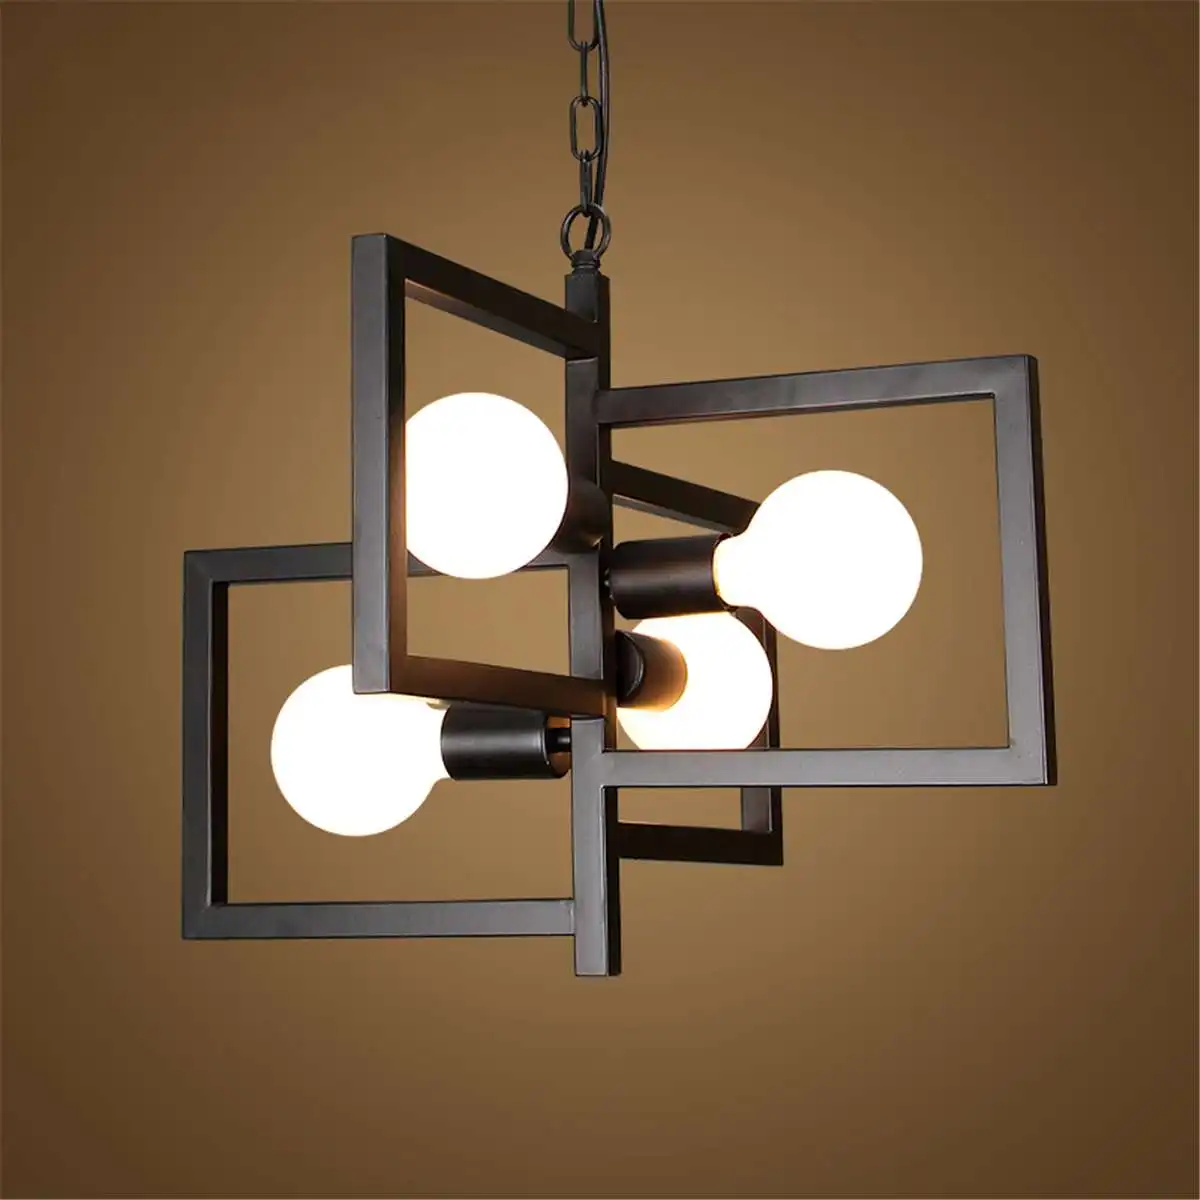 

Потолочная люстра E27 в стиле ретро, 4 насадки, подвесной светильник В индустриальном стиле, железная черная квадратная лампа